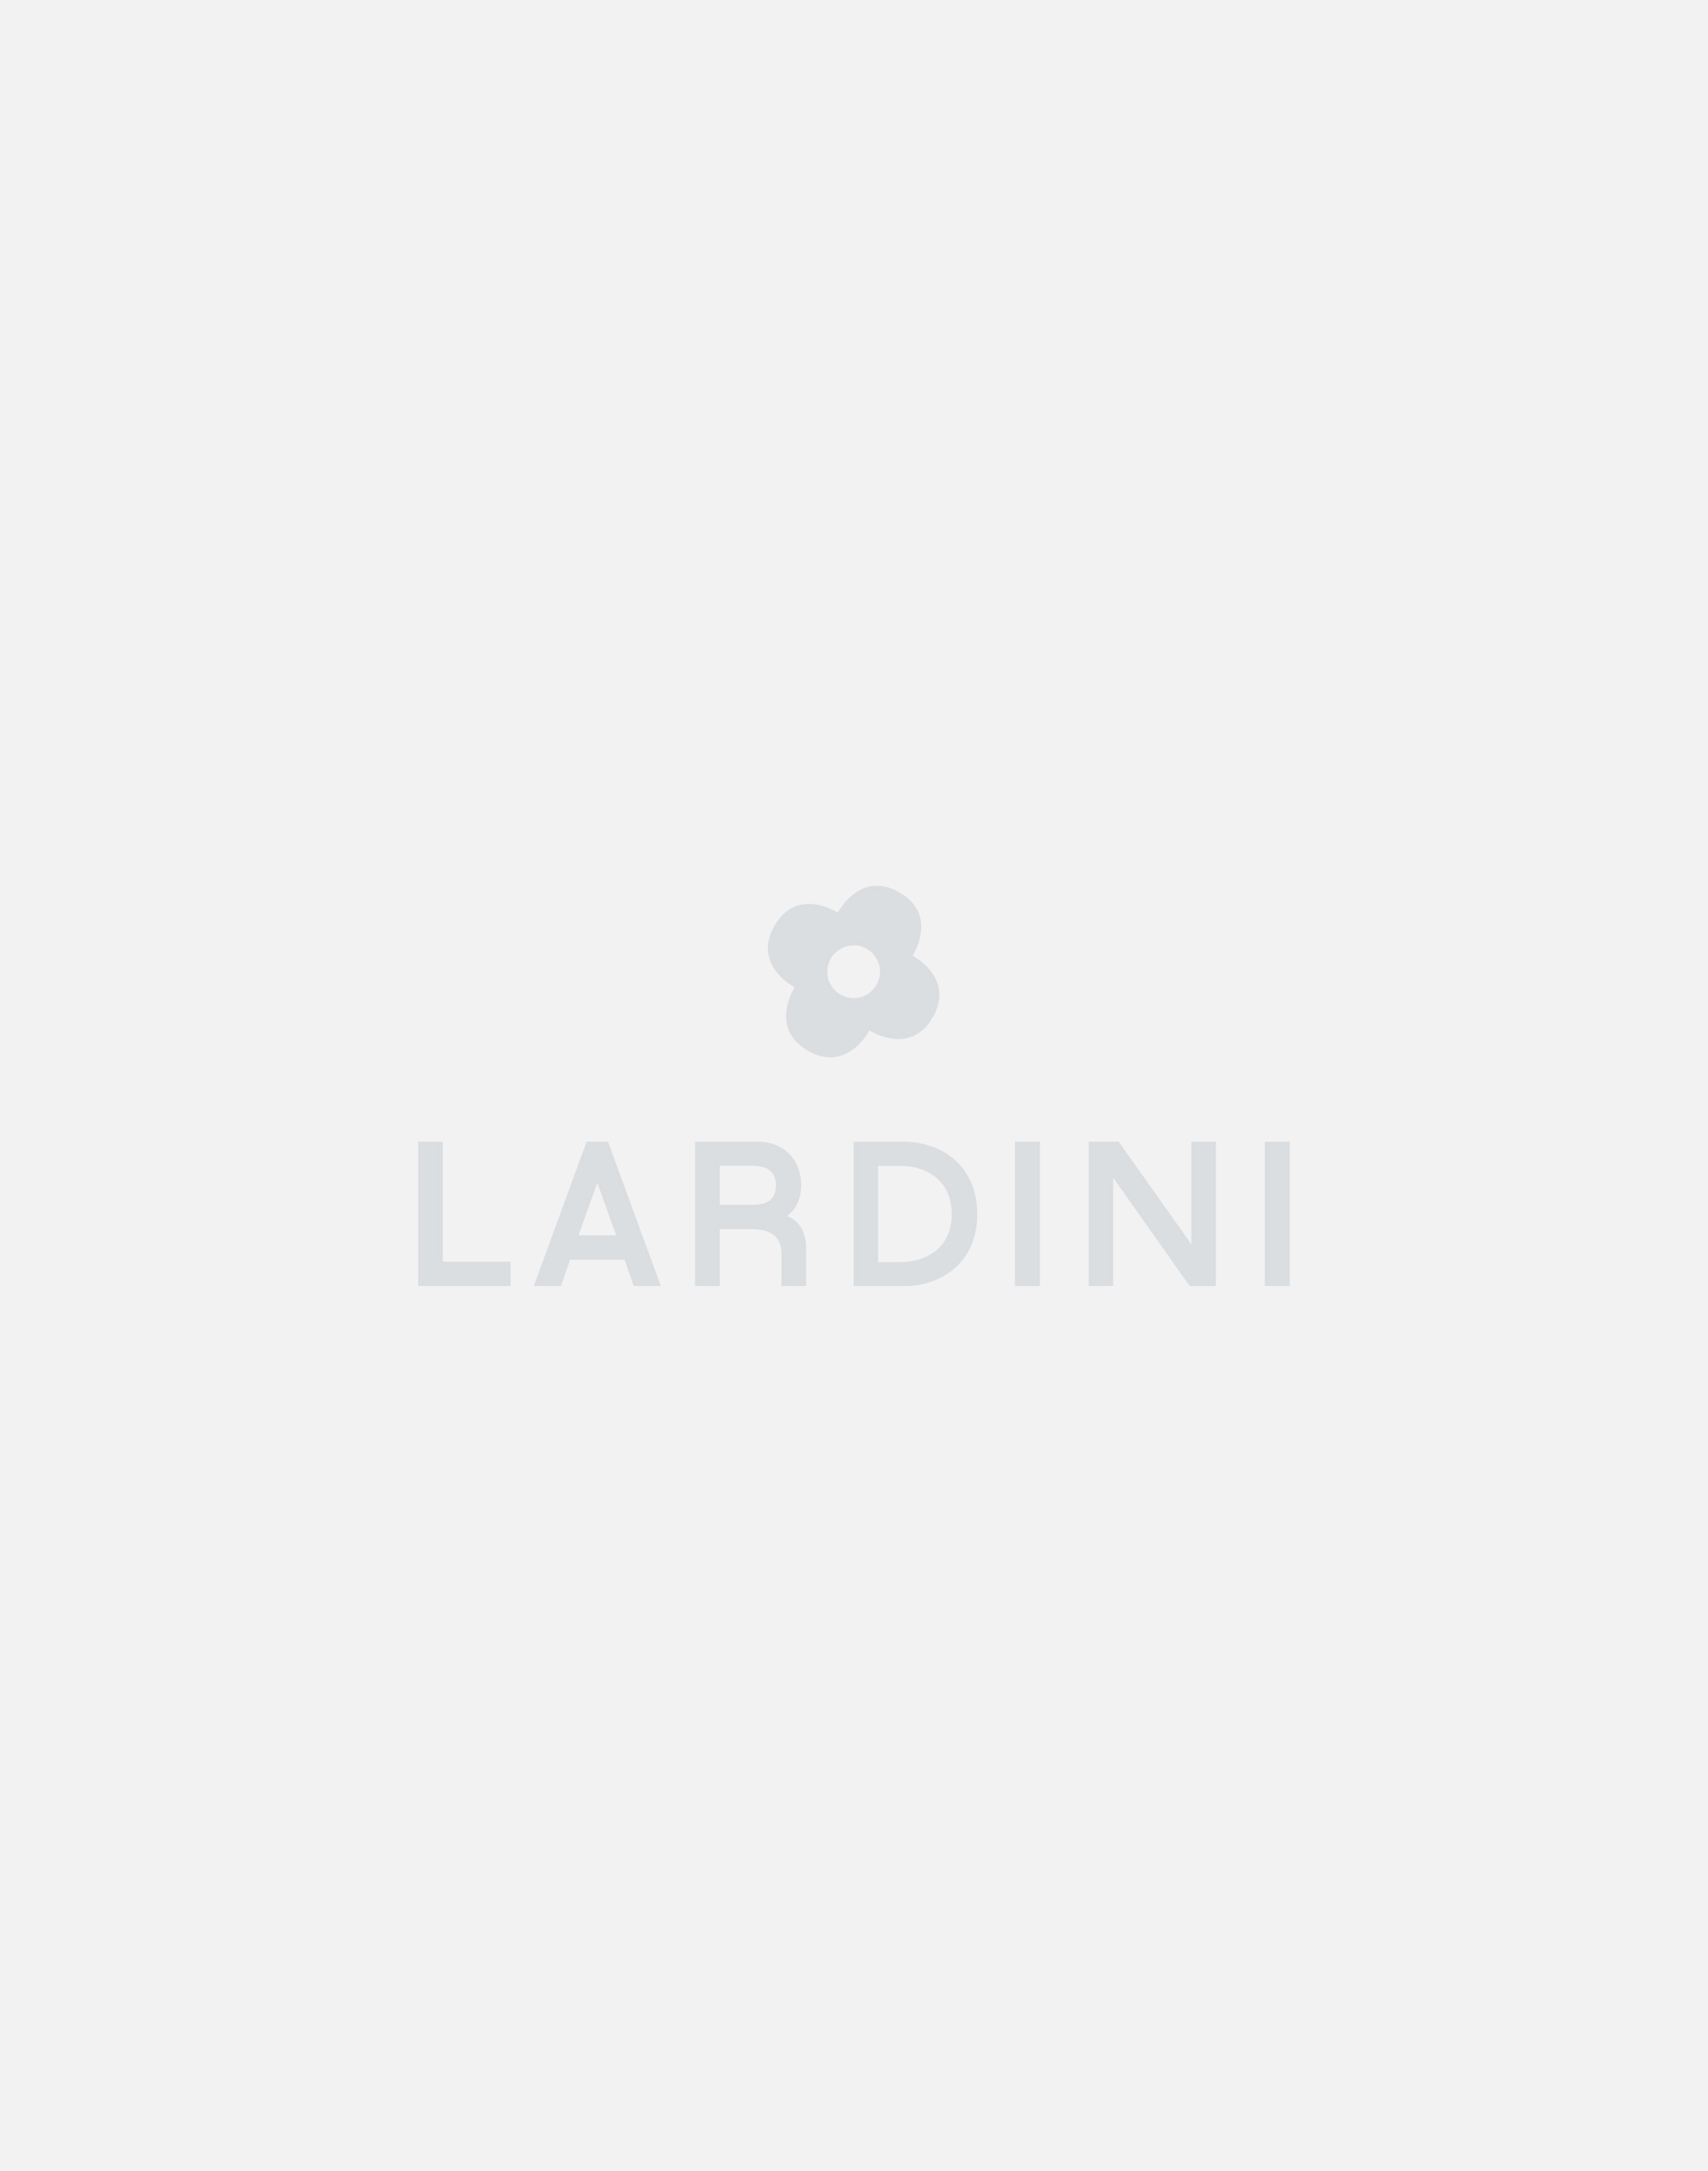 Cotton and nylon field jacket - Lardini by Yosuke Aizawa 4